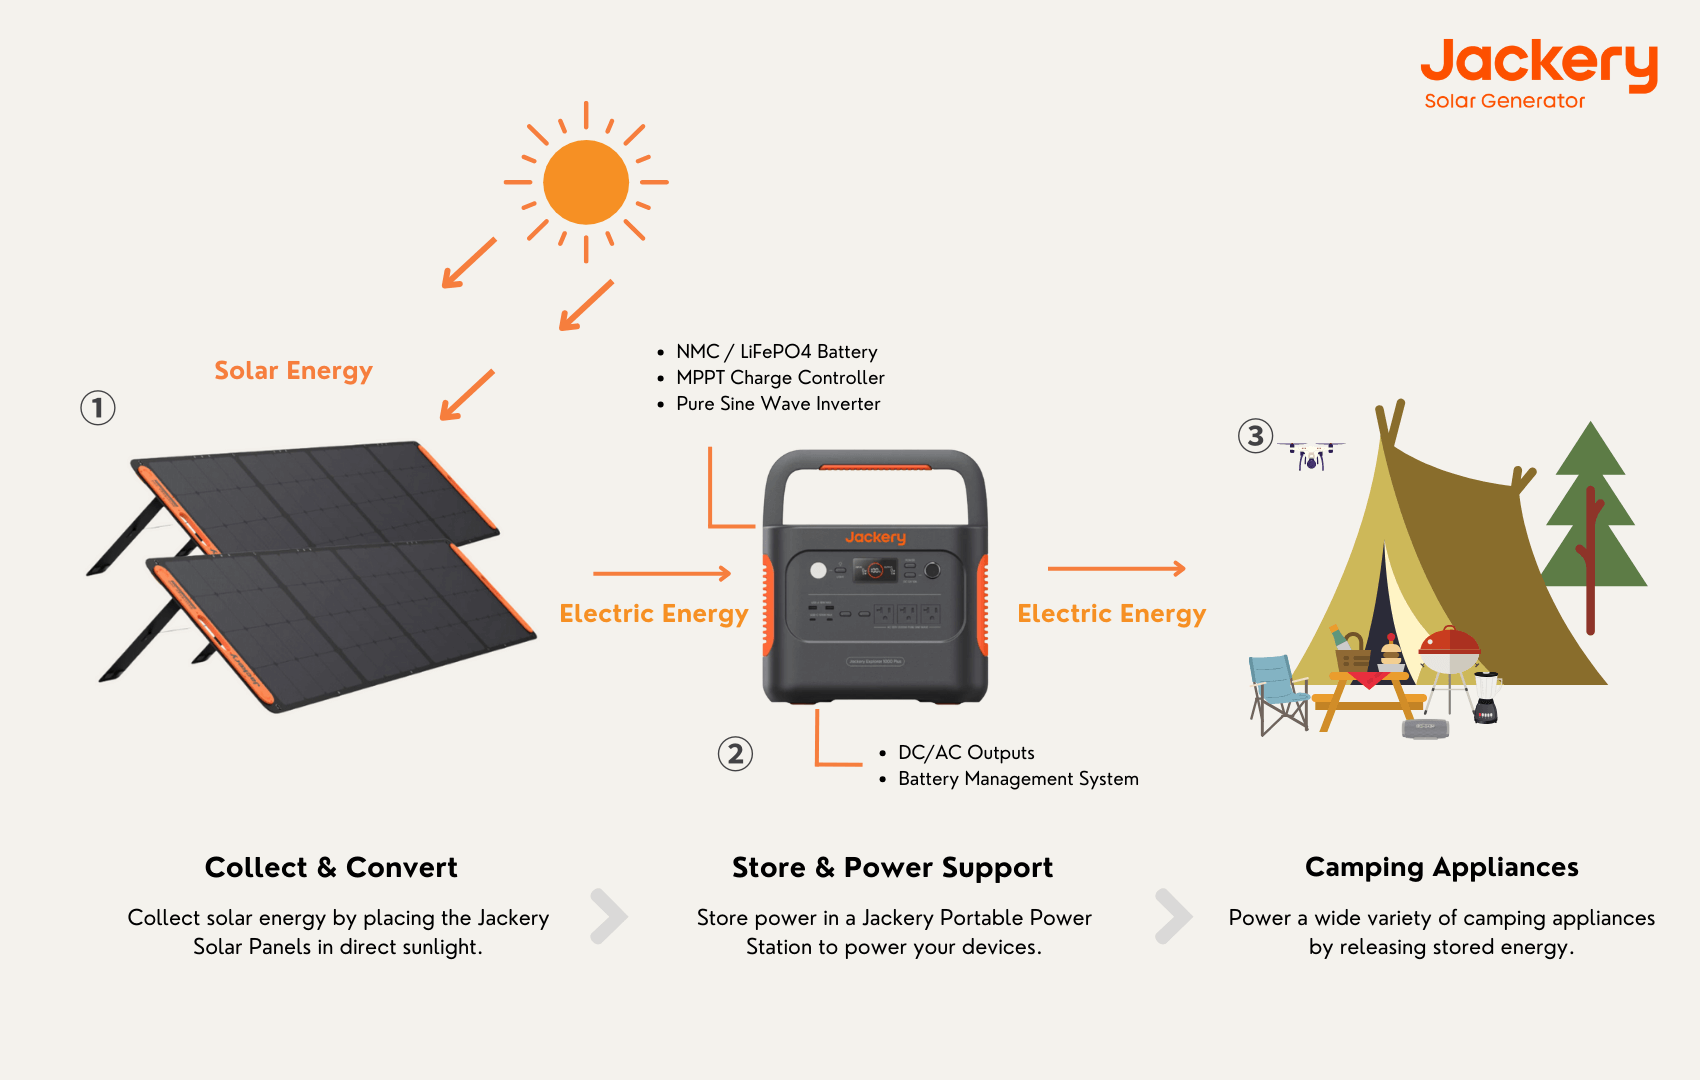 Jackery Solar Generators for Camping in Colorado